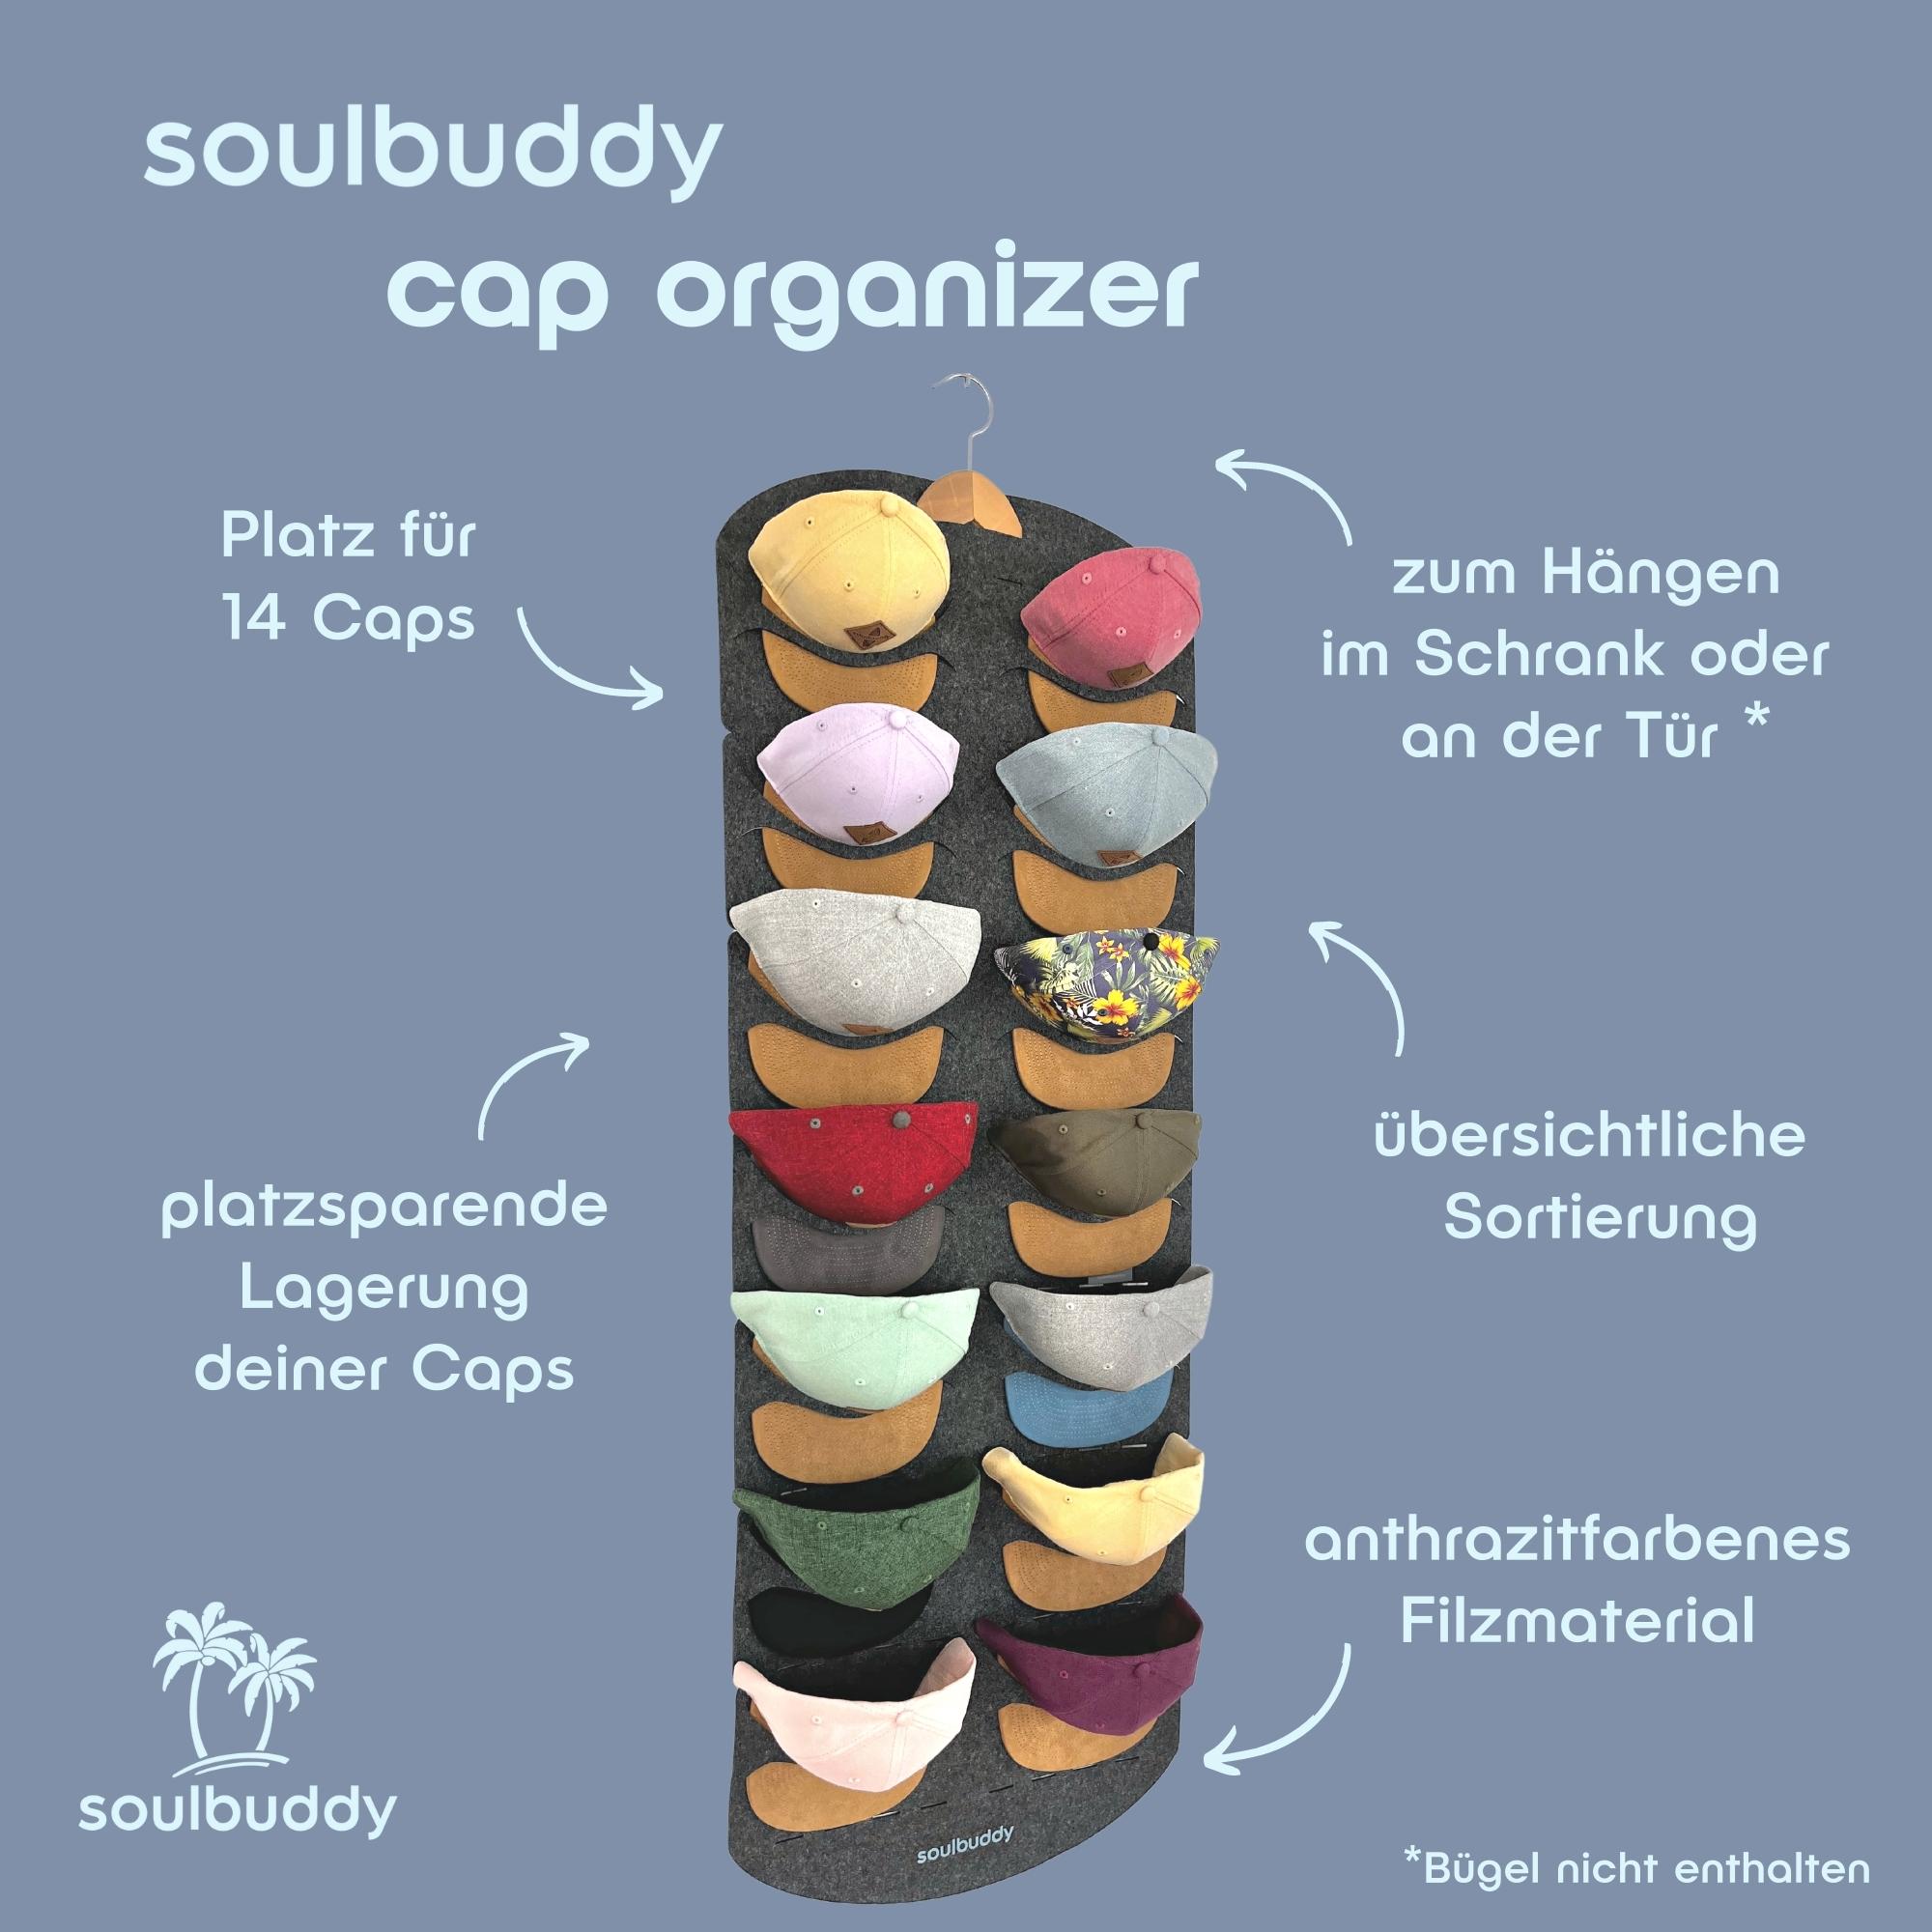 Soulbuddy Cap Organizer - Details